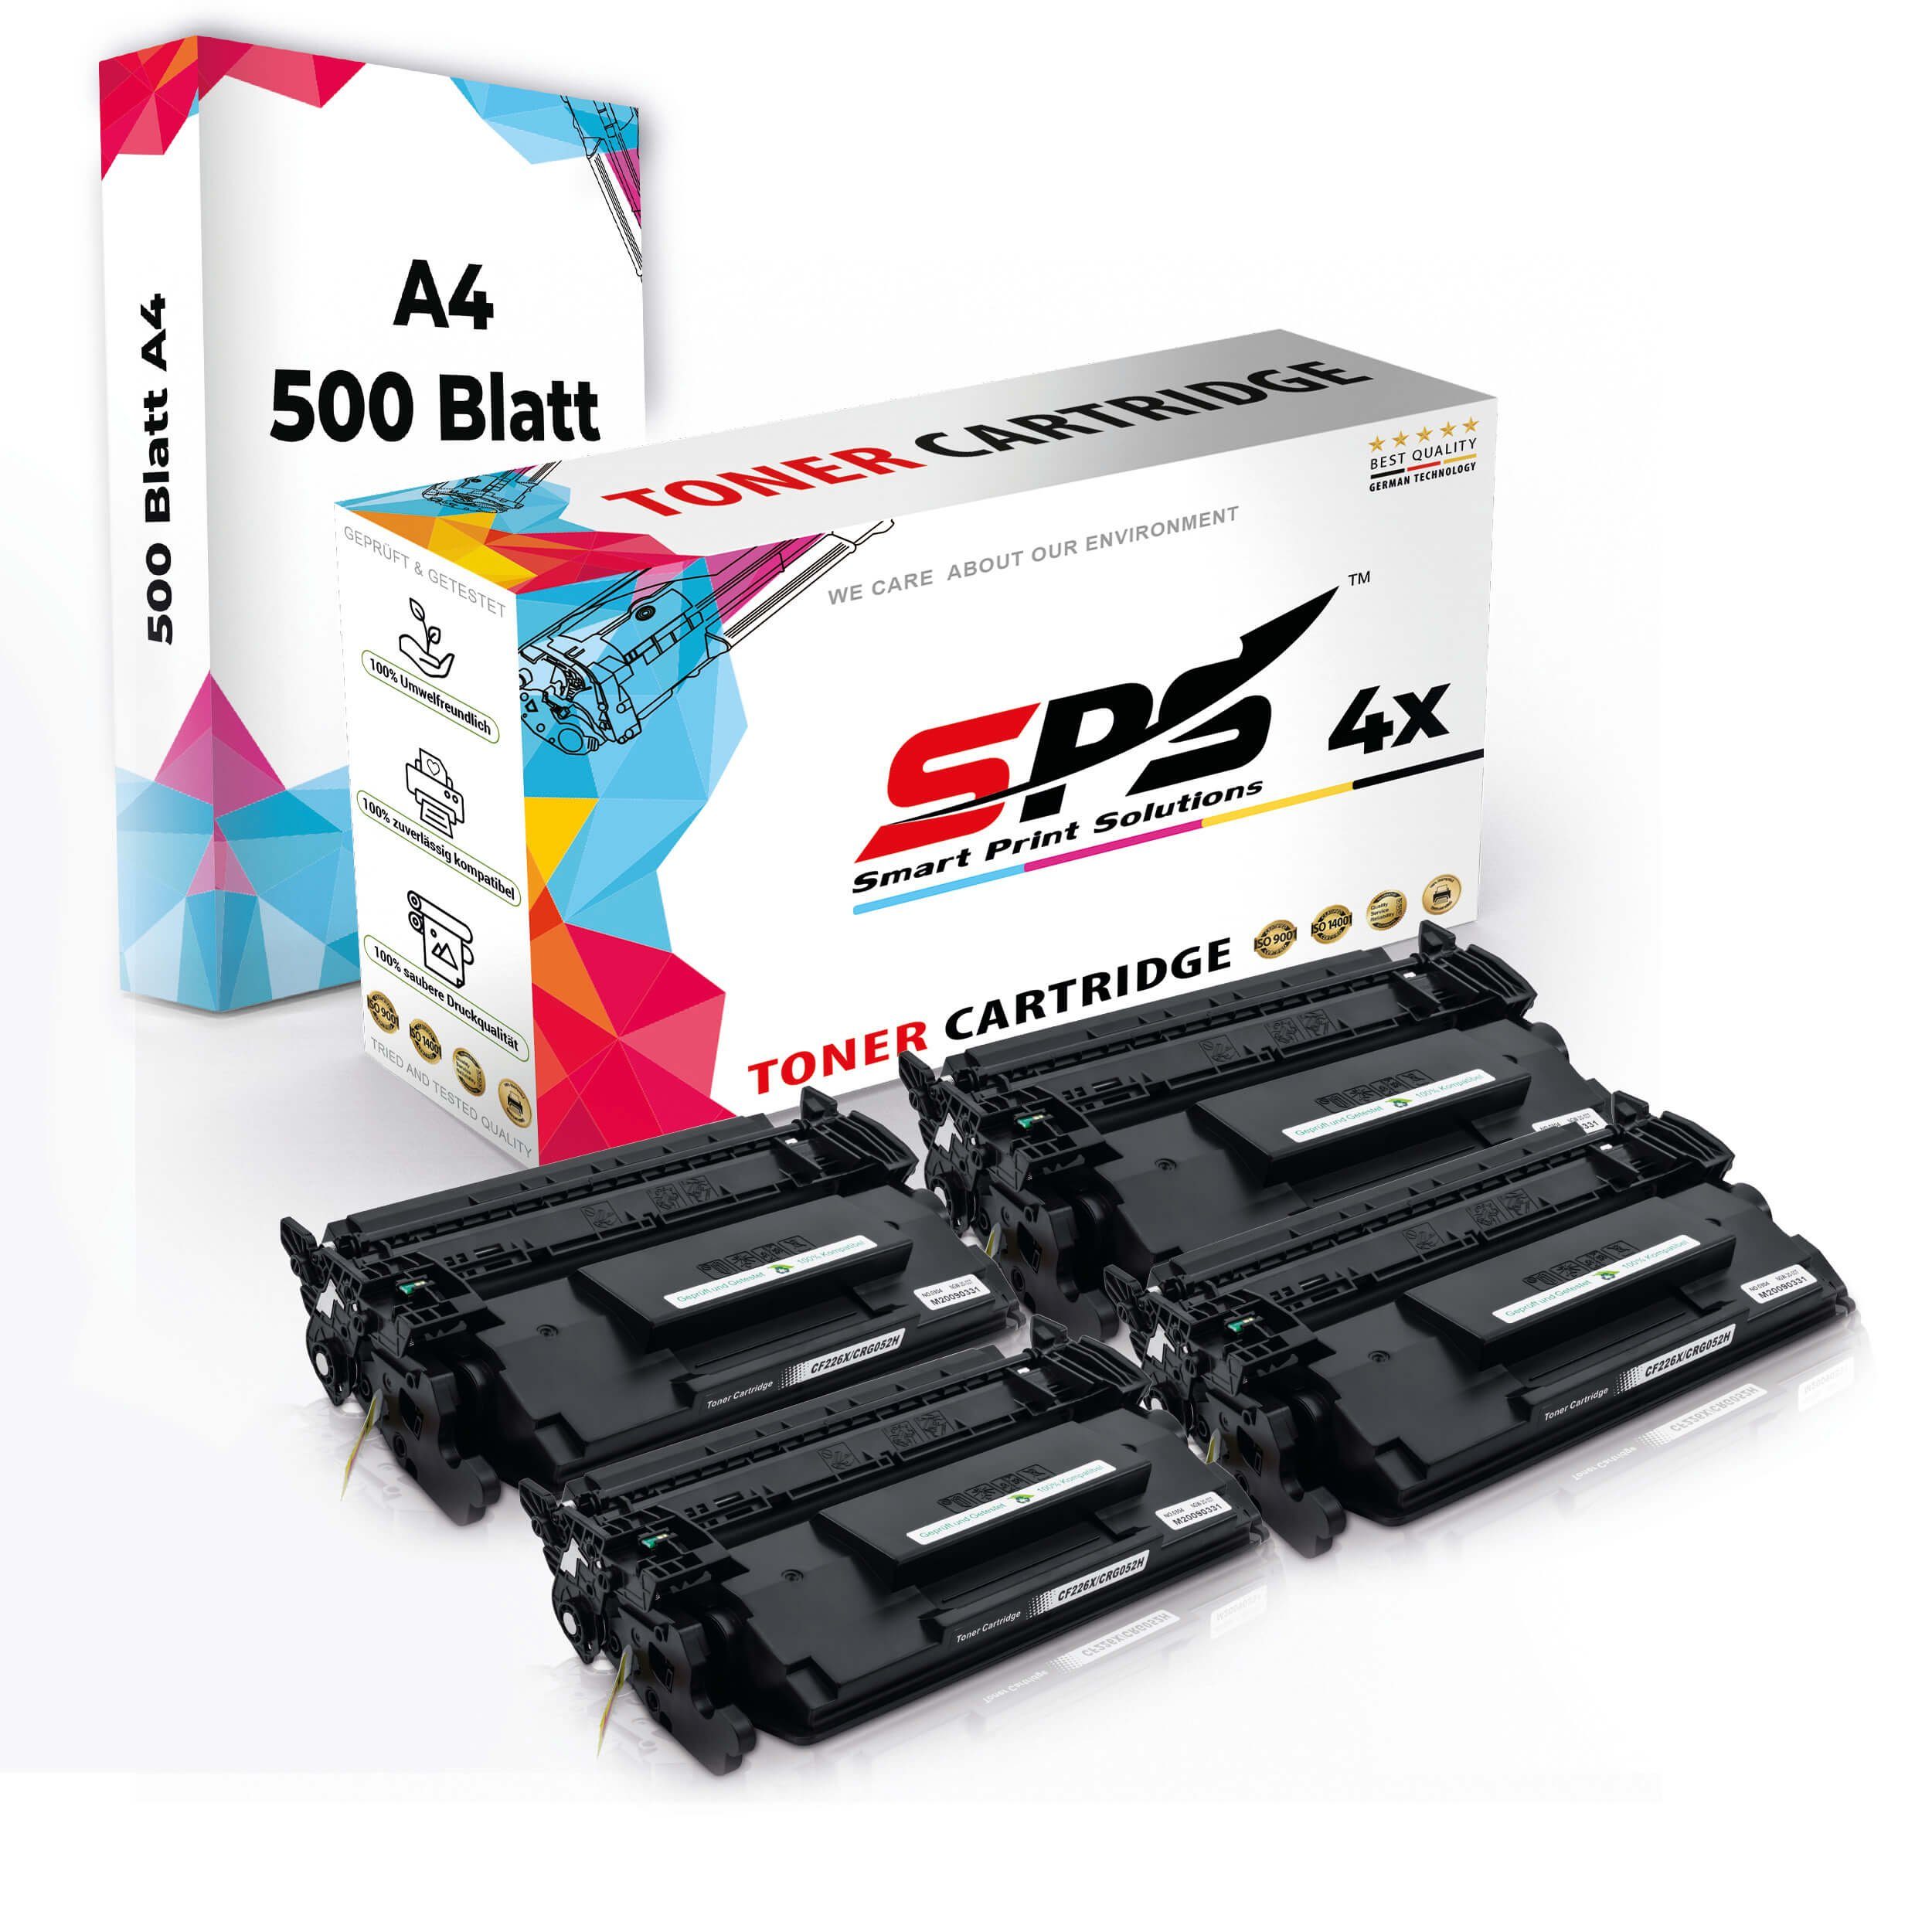 A4 + Druckerpapier) Multipack Druckerpapier SPS (5er 4x Kompatibel, 4x Set Toner,1x Tonerkartusche Pack, A4